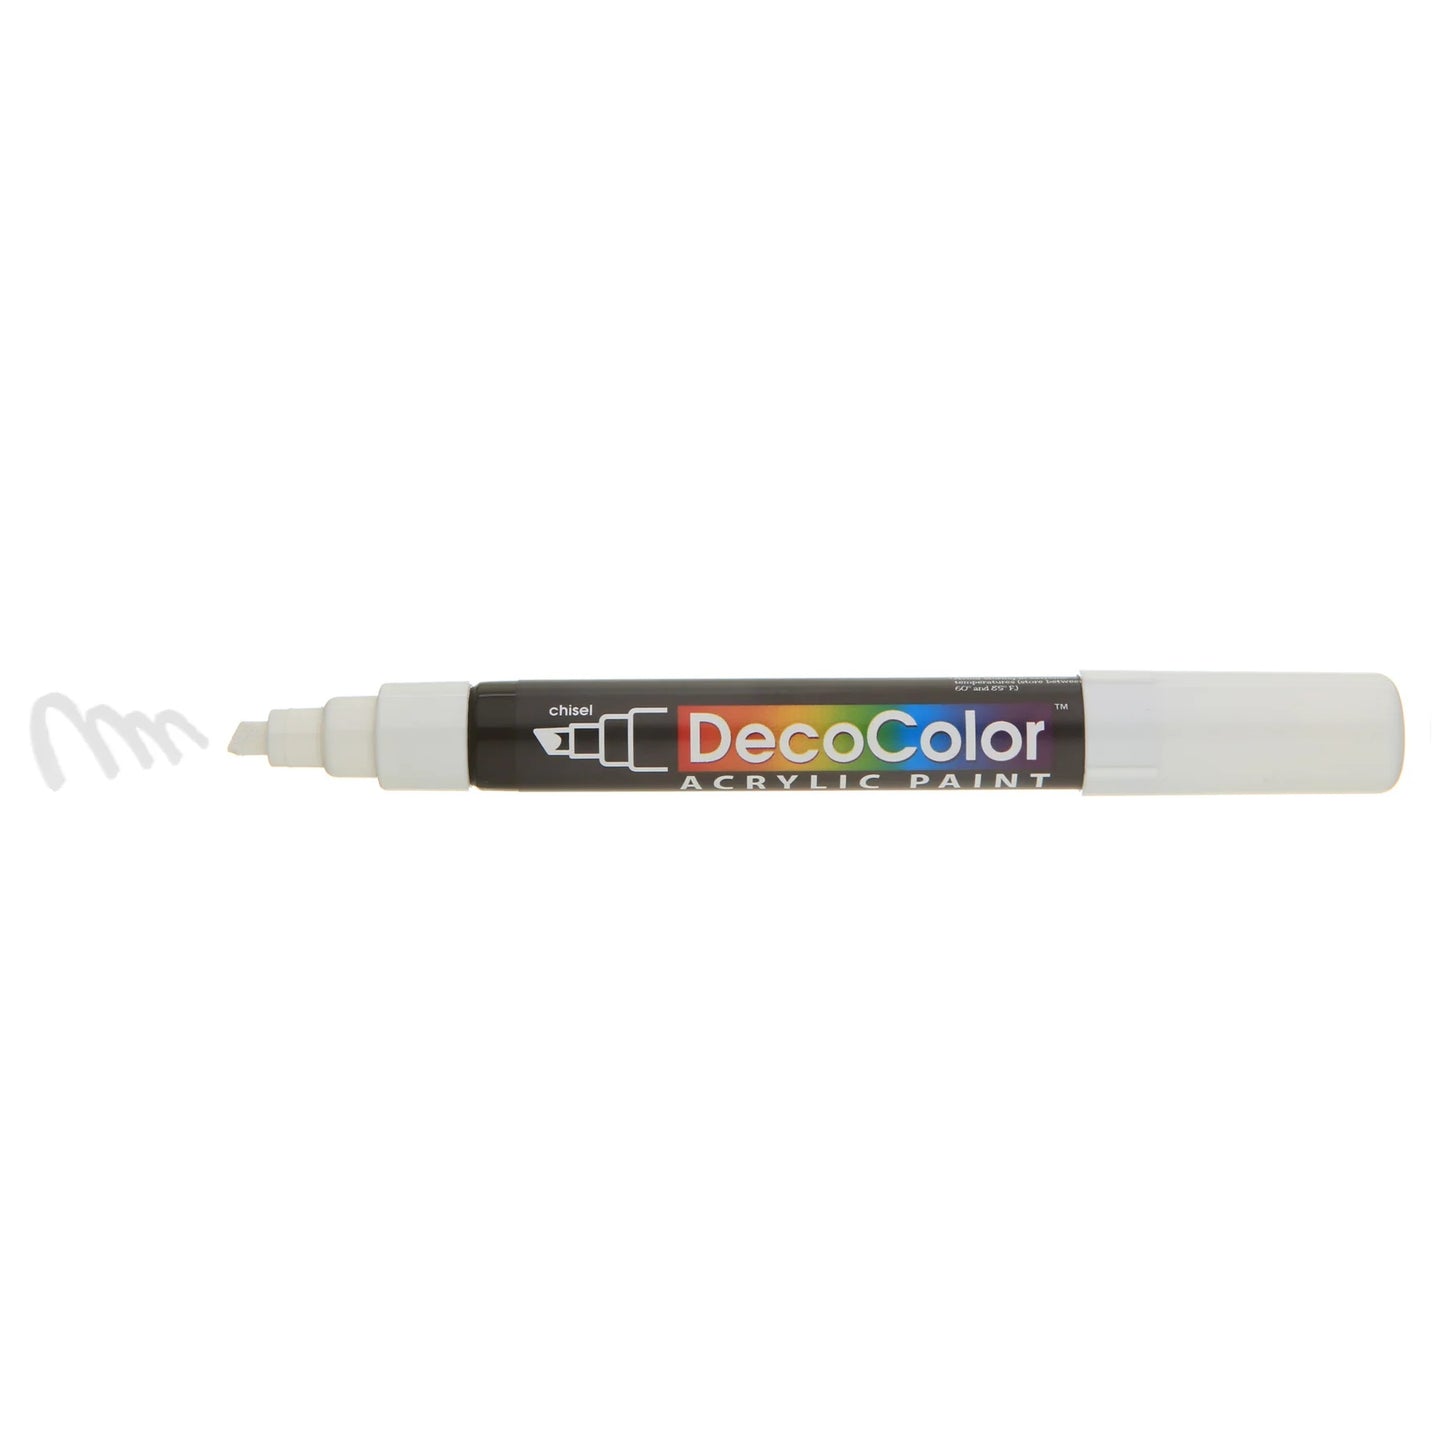 Decocolor acrylstift, beitelpunt